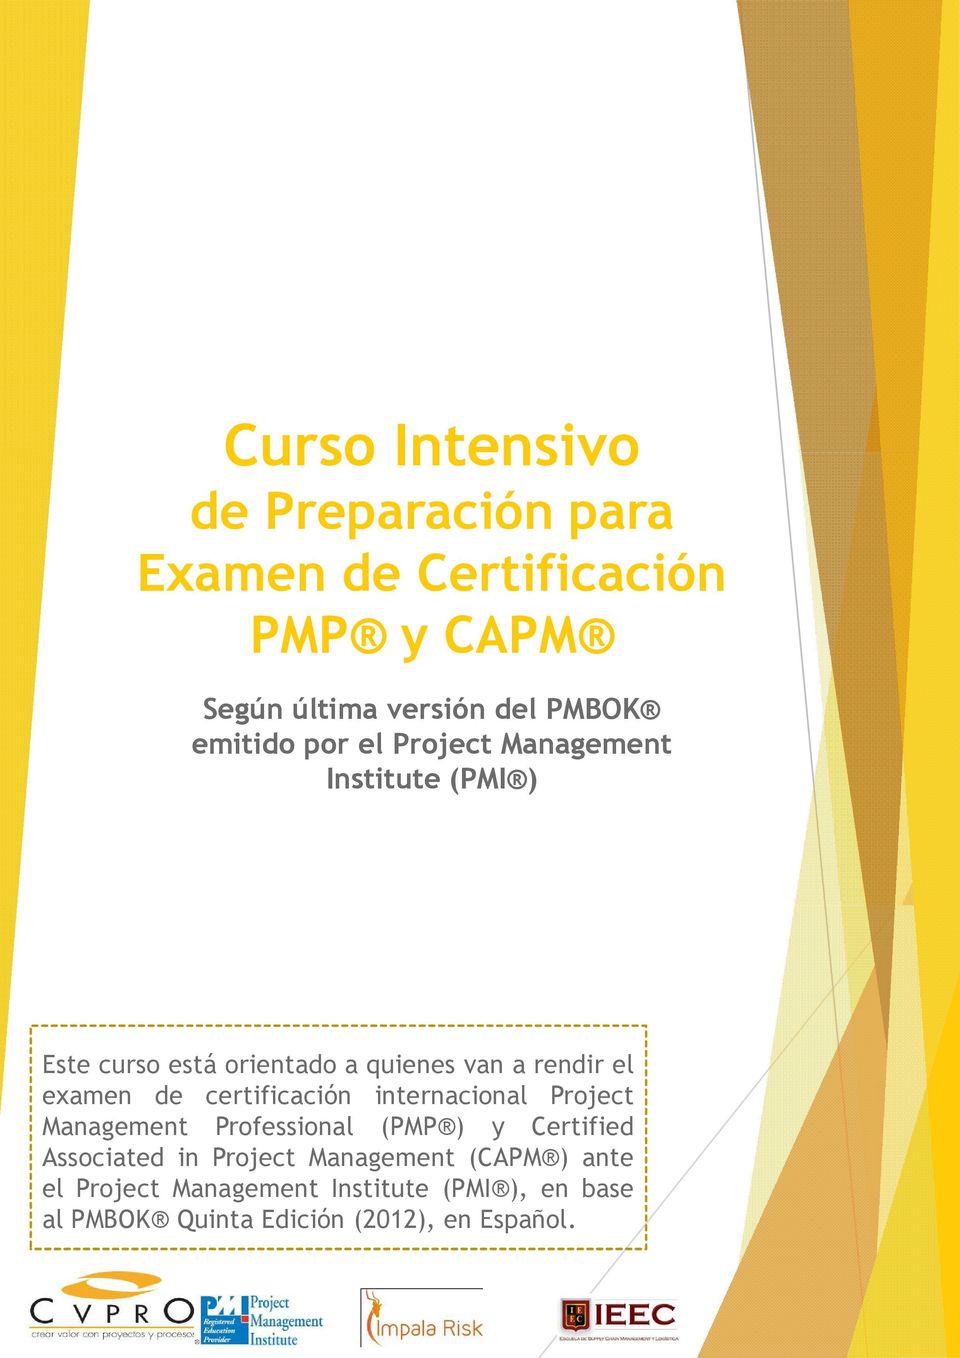 examen de certificación internacional Project Management Professional (PMP ) y Certified Associated in